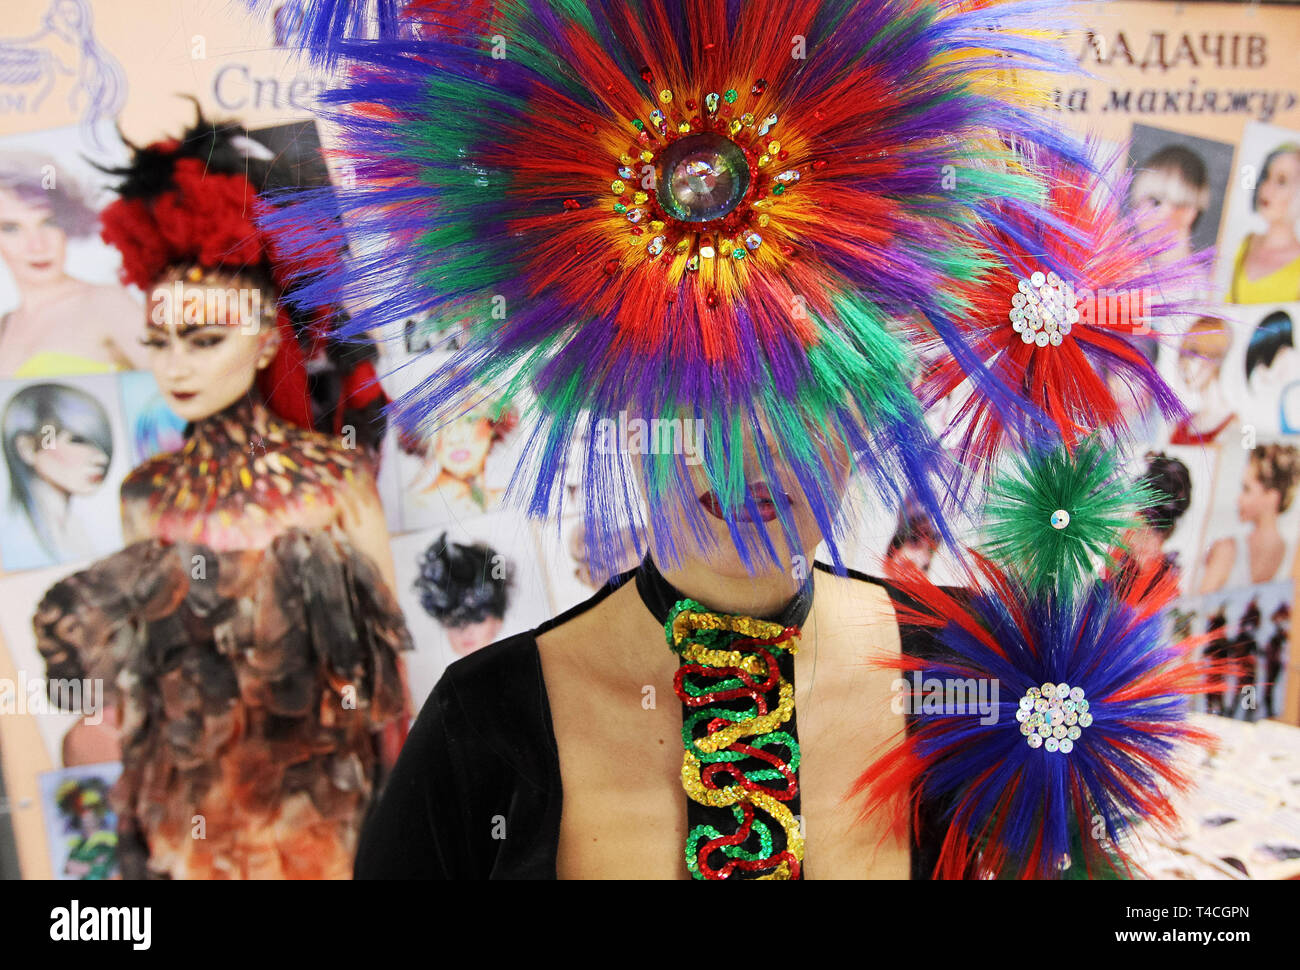 April 15, 2019 - Kiew, Ukraine - Modelle tragen Frisur Kreationen stellen während der jährlichen Internationalen Festivals von Friseur, Mode und Design'' Crystal Angel'' in Kiew, Ukraine, am 15. April 2019. Die Friseur-und Make-up-Künstler nahmen die jährlichen Friseure Wettbewerb vom 14. bis 15. April. (Bild: © SERG Glovny/ZUMA Draht) Stockfoto